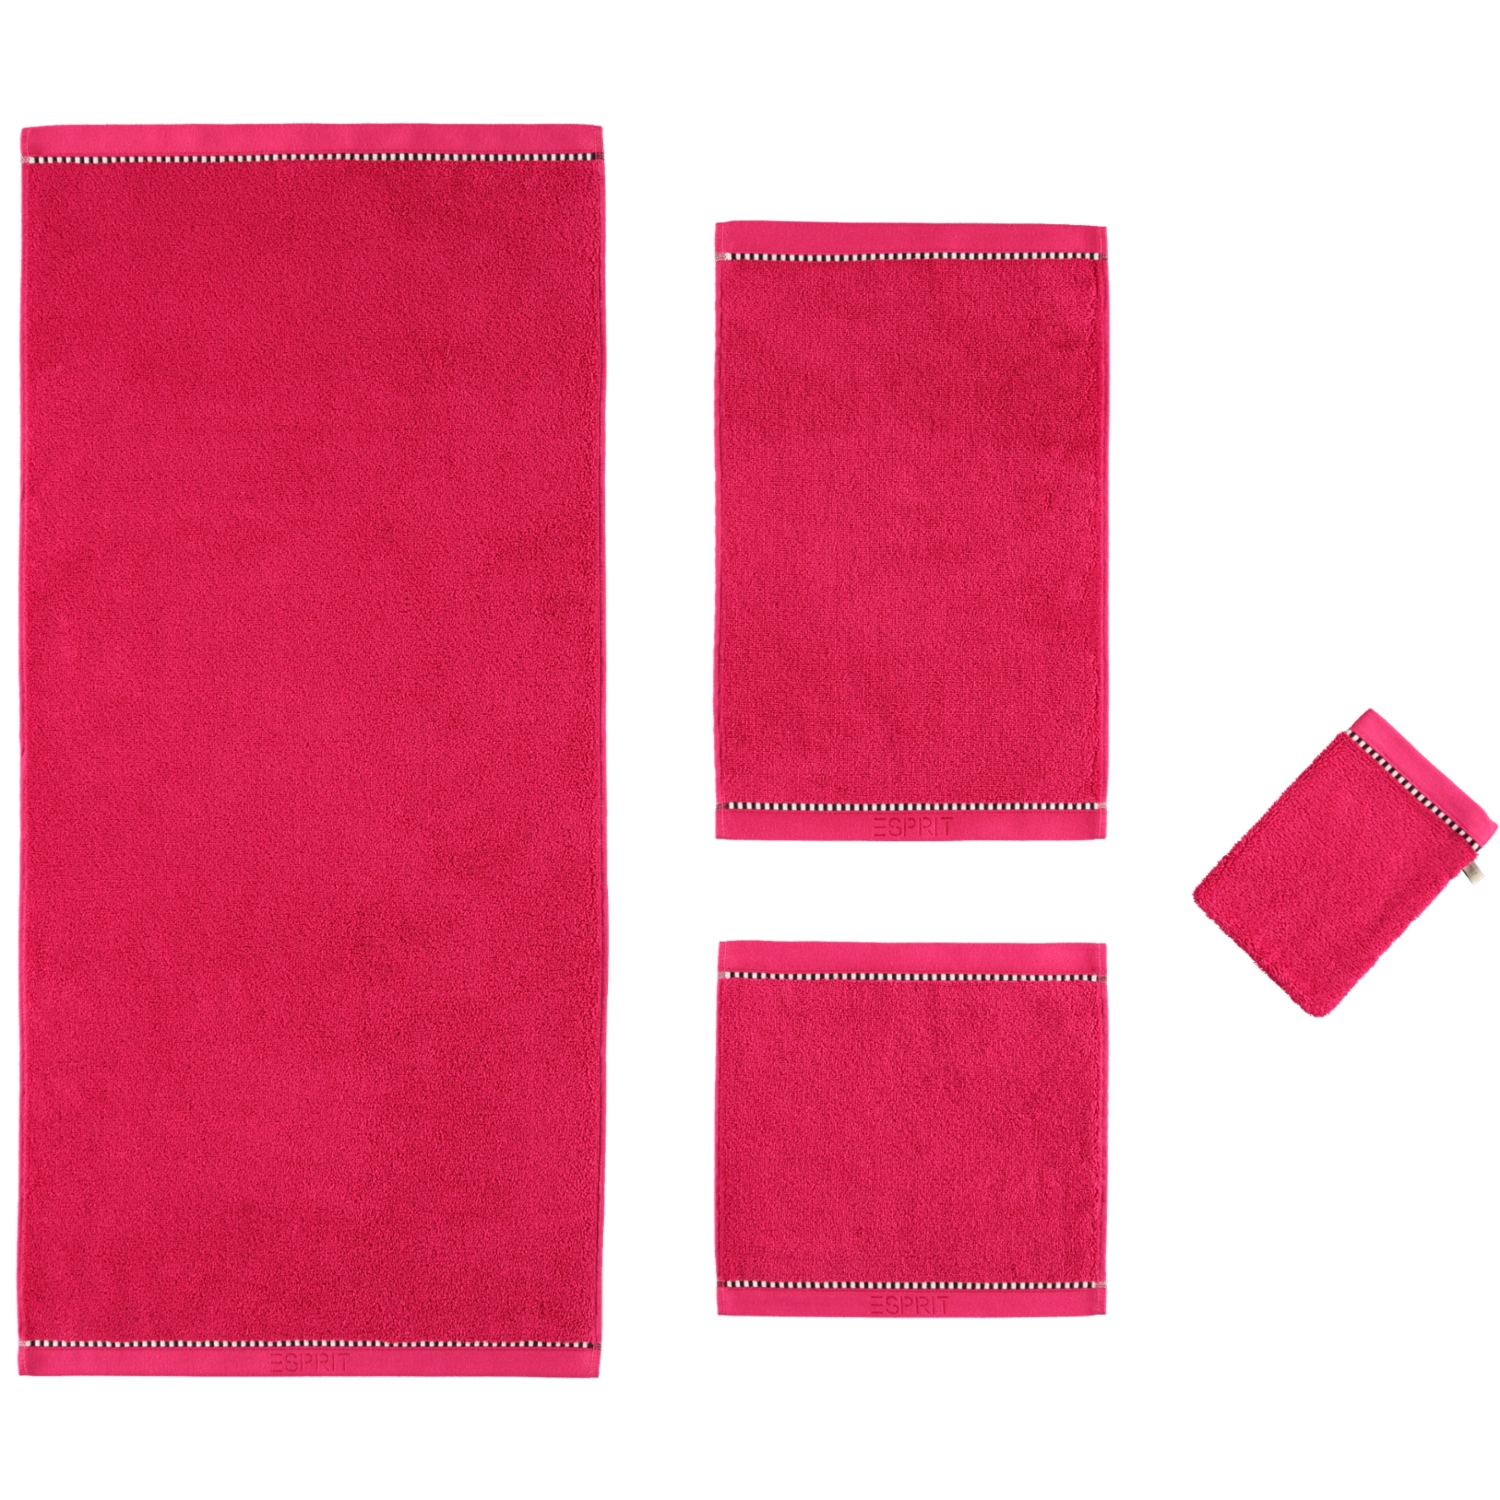 Esprit Box Solid - - | | | Marken Handtücher ESPRIT ESPRIT Farbe: raspberry 362